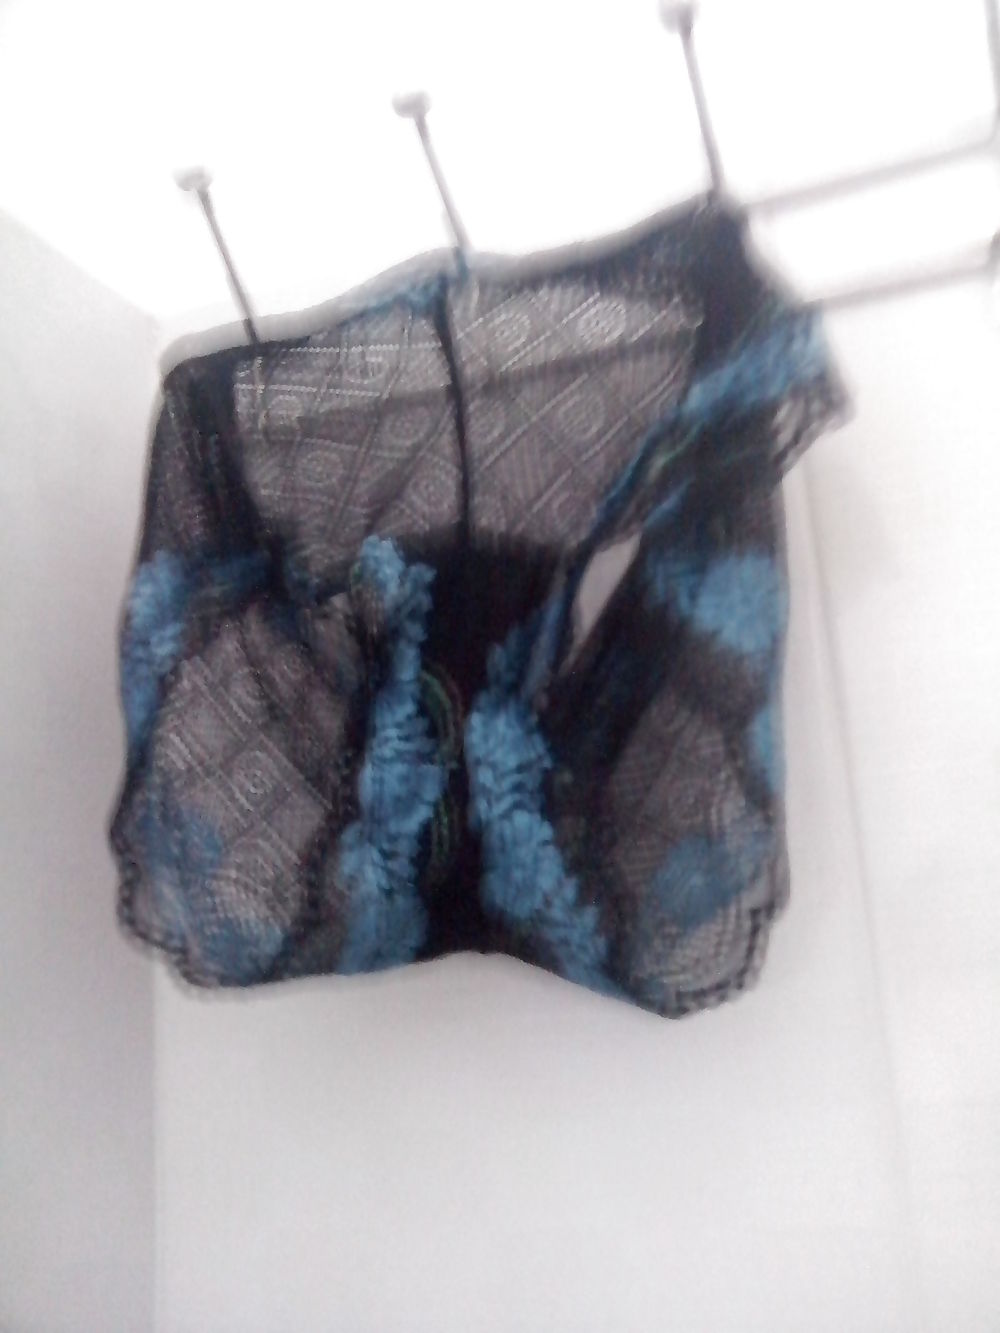 My sexy panties of neighbour girls 15-2-2013 adult photos